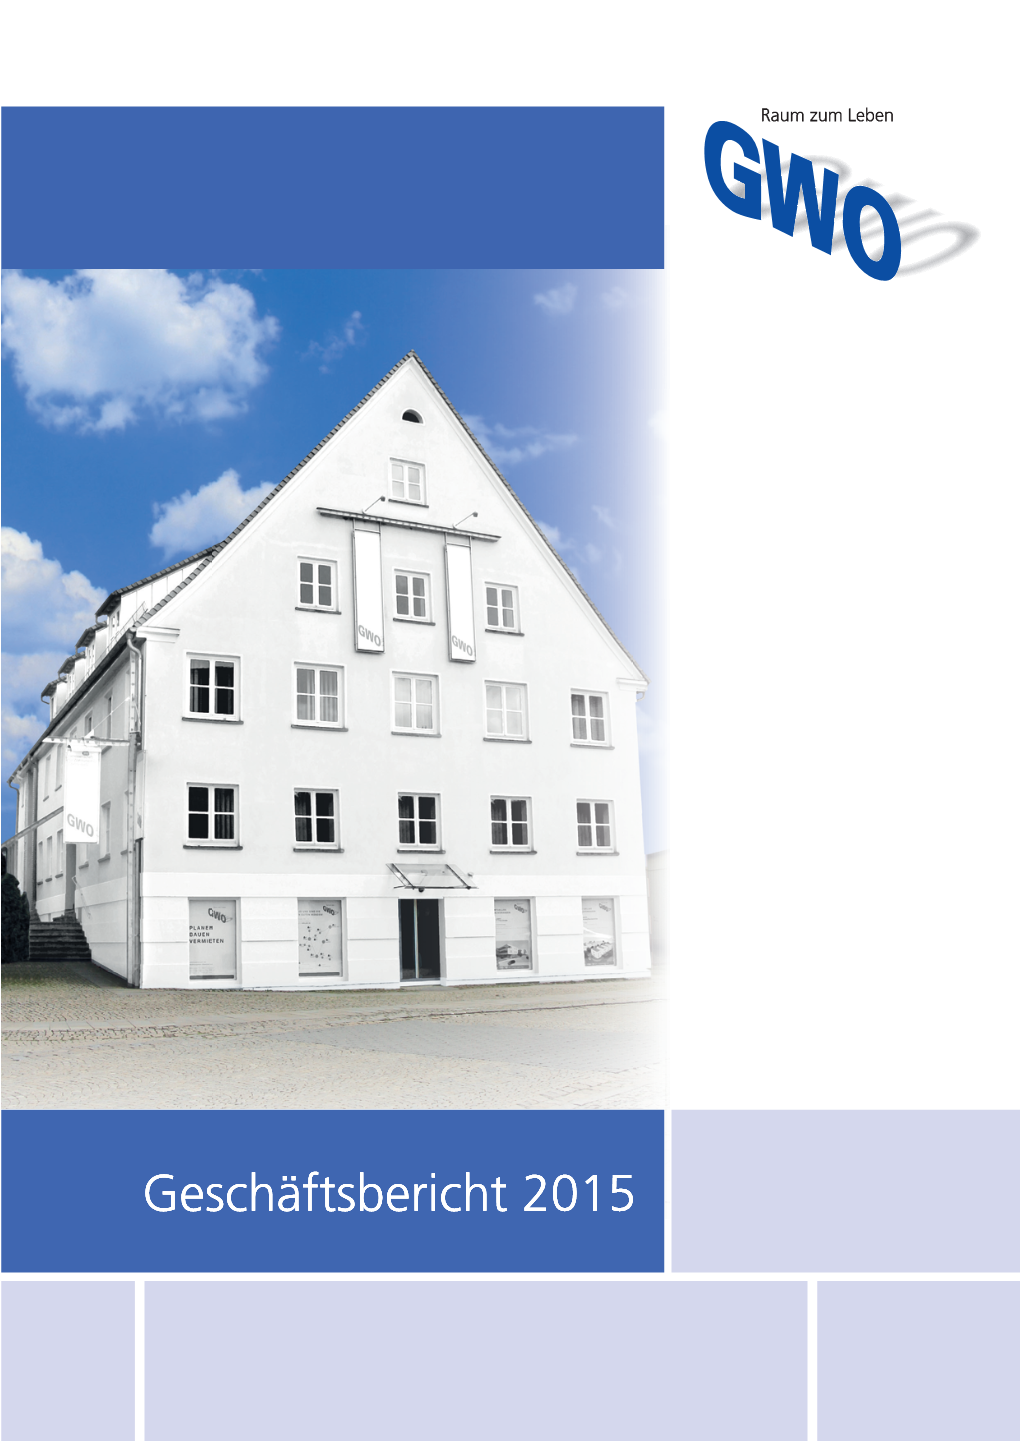 Geschäftsbericht 2015 Modernisierte Mietwohnungen Wörthstraße 40-50, Ulm Auszeichnung Mit Der Pro-Ulma-Plakette Für Vorbildliches Restaurieren Alter Gebäude Inhalt